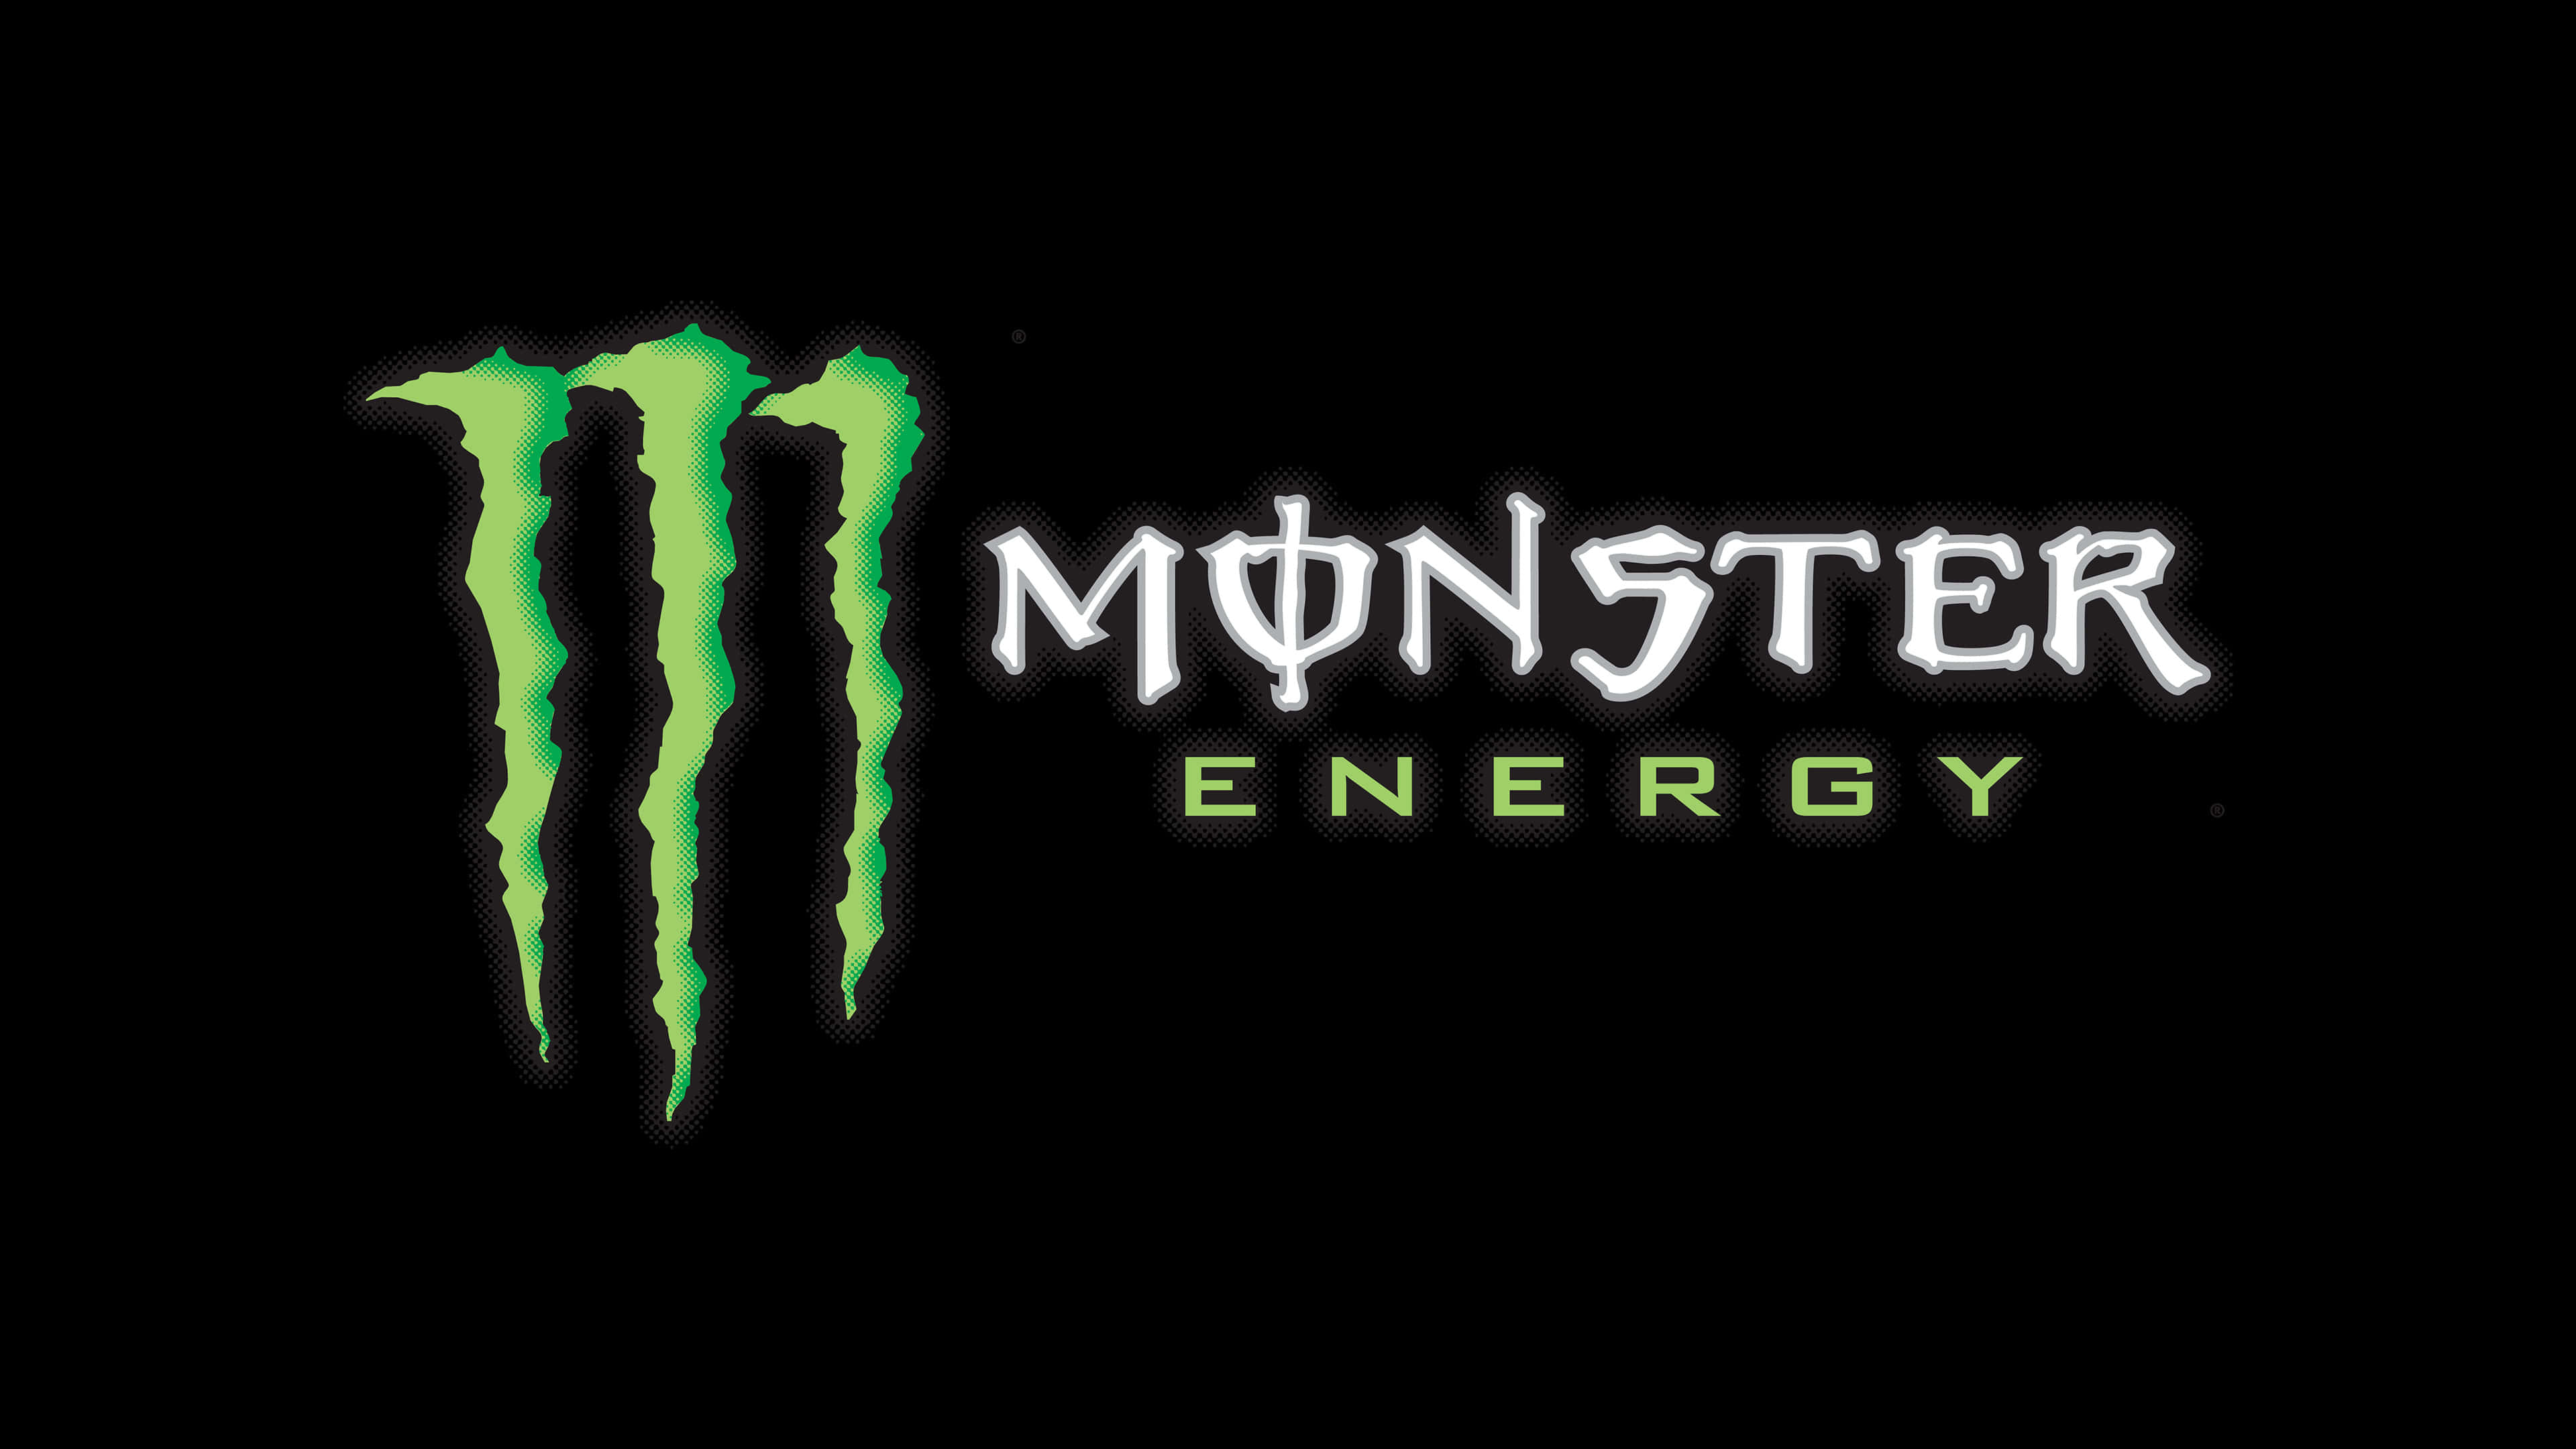 Monster Energy Logo UHD 4K Wallpaper | Pixelz